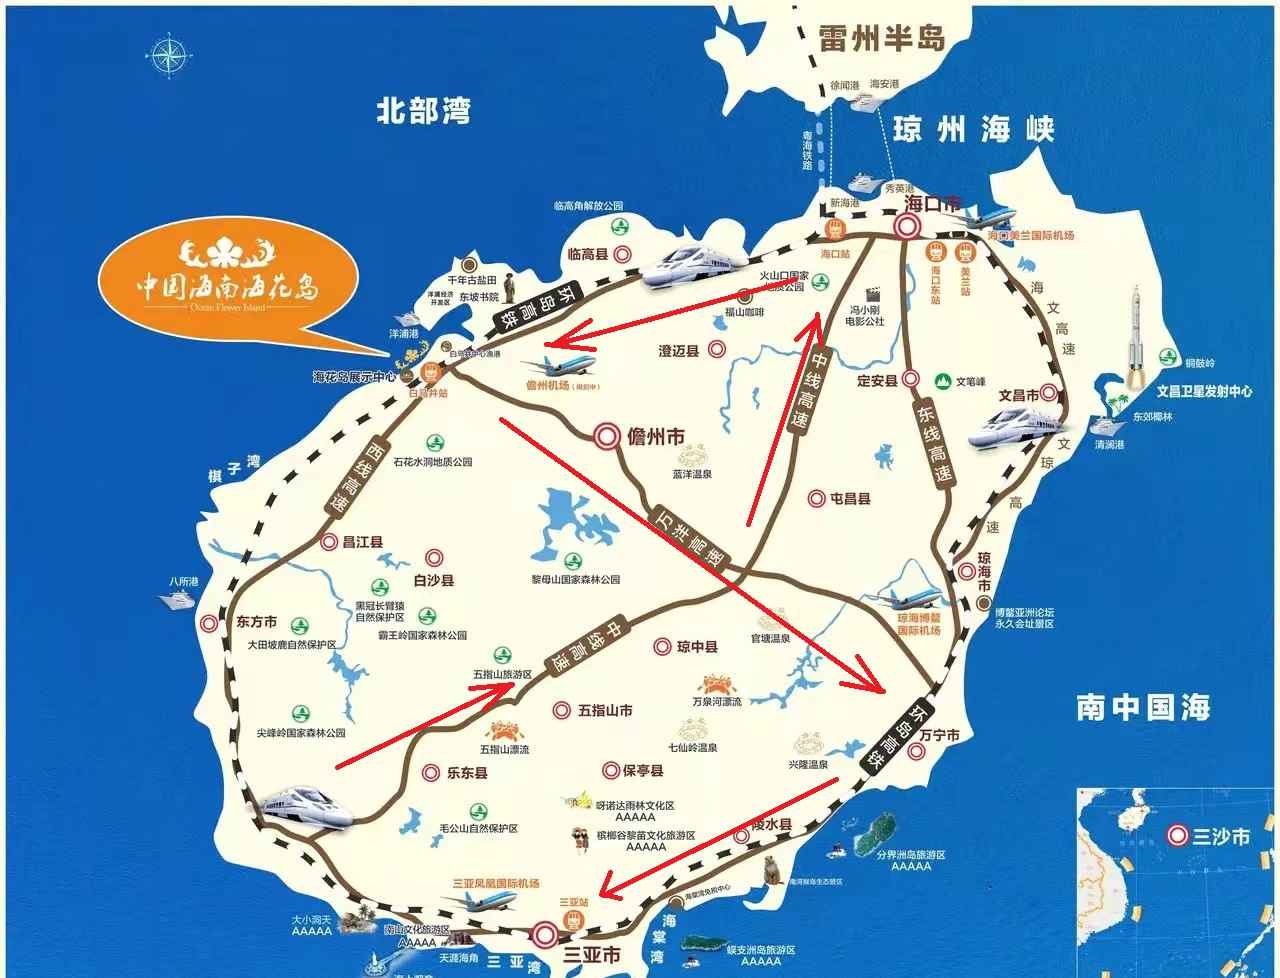 海南自驾环岛游第一季——7天1000公里——详细行程及旅游攻略